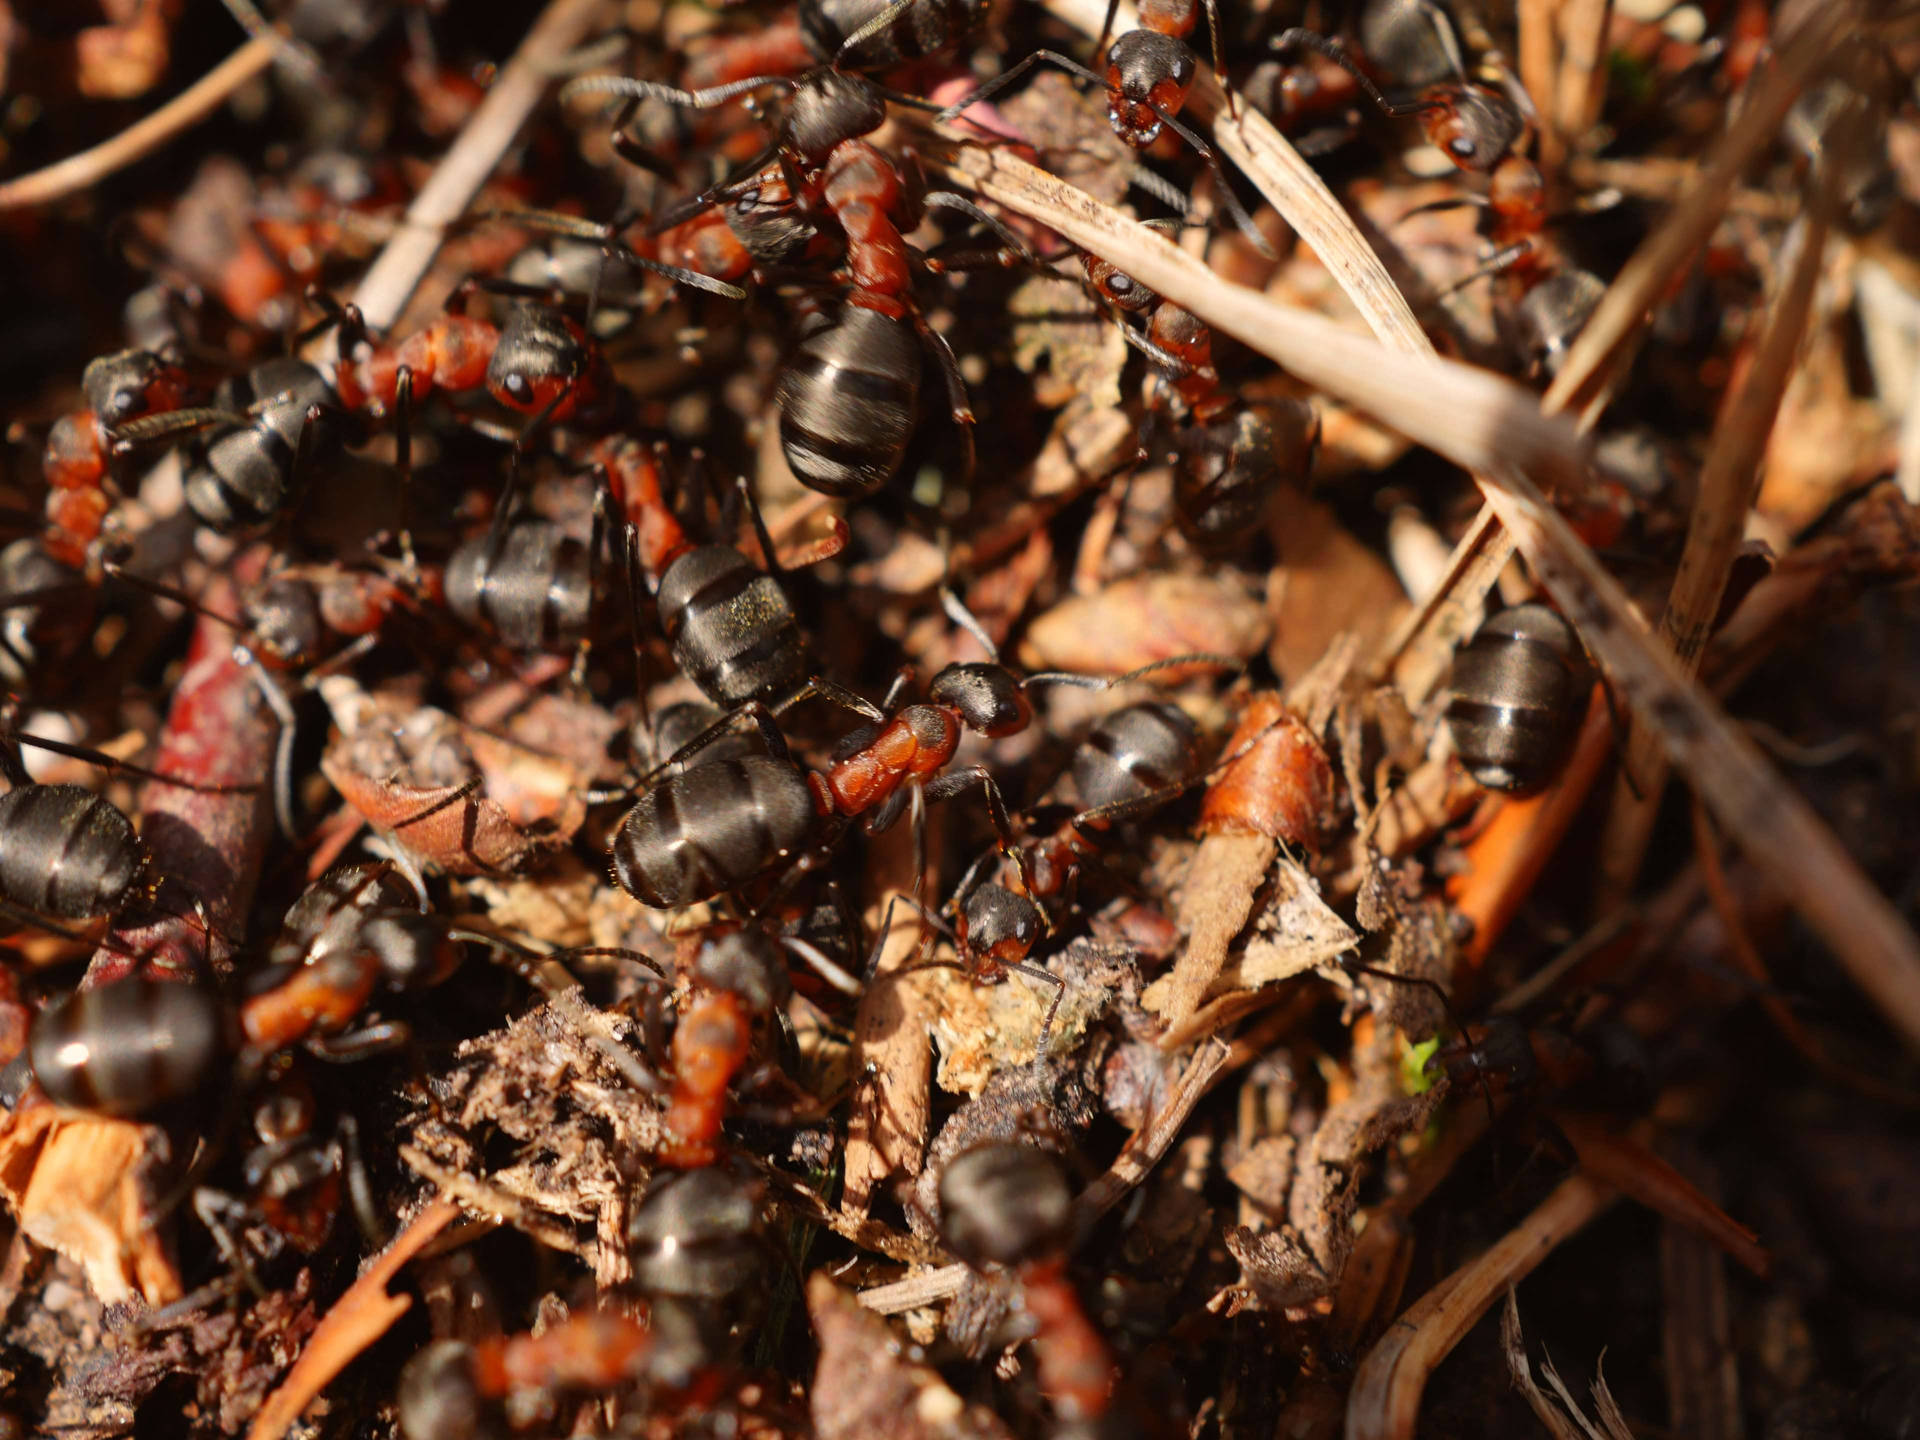 Aneinanderreihenvon Ameisen Wallpaper